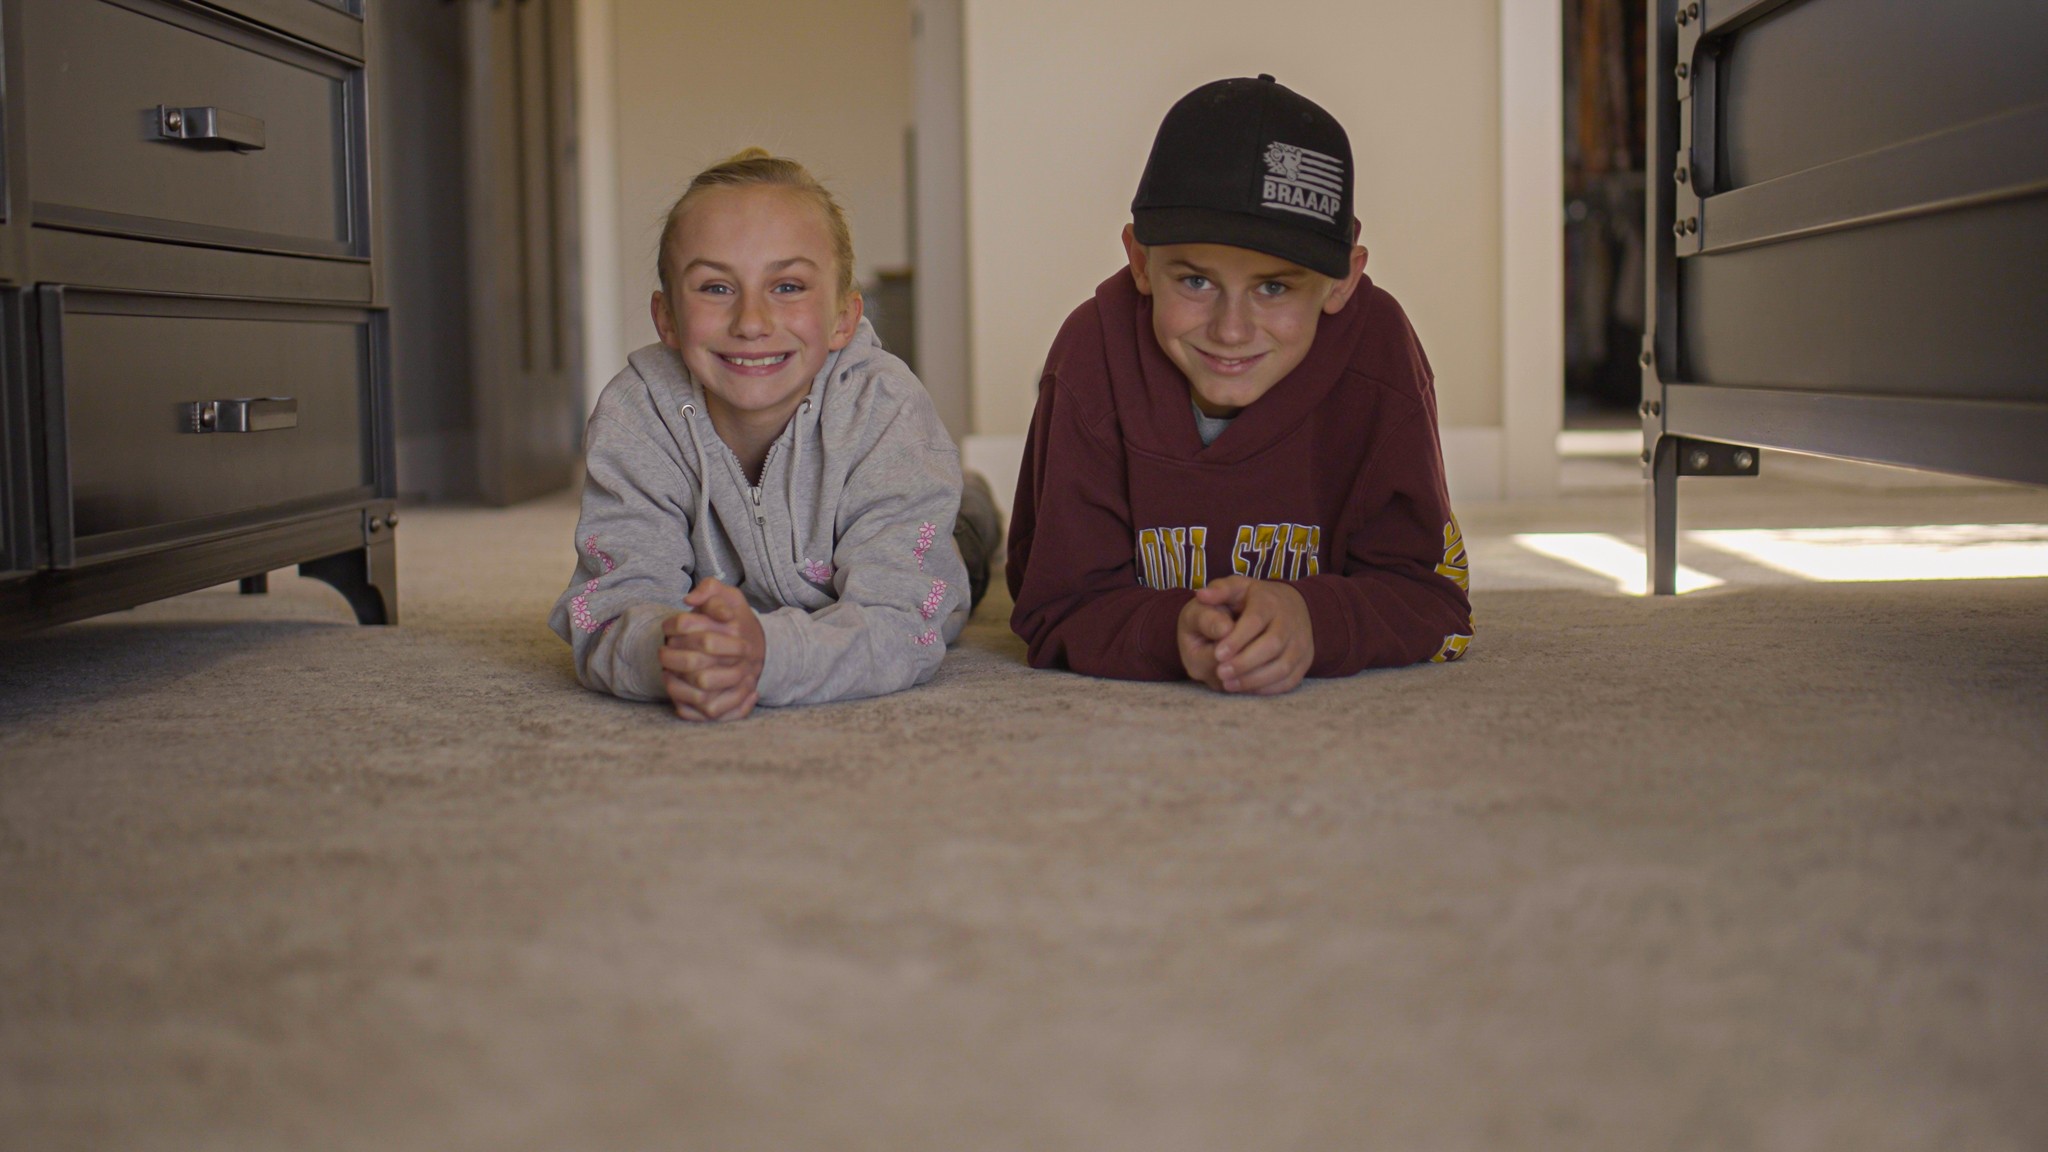 Smiling kids | I & J Carpets, Inc.